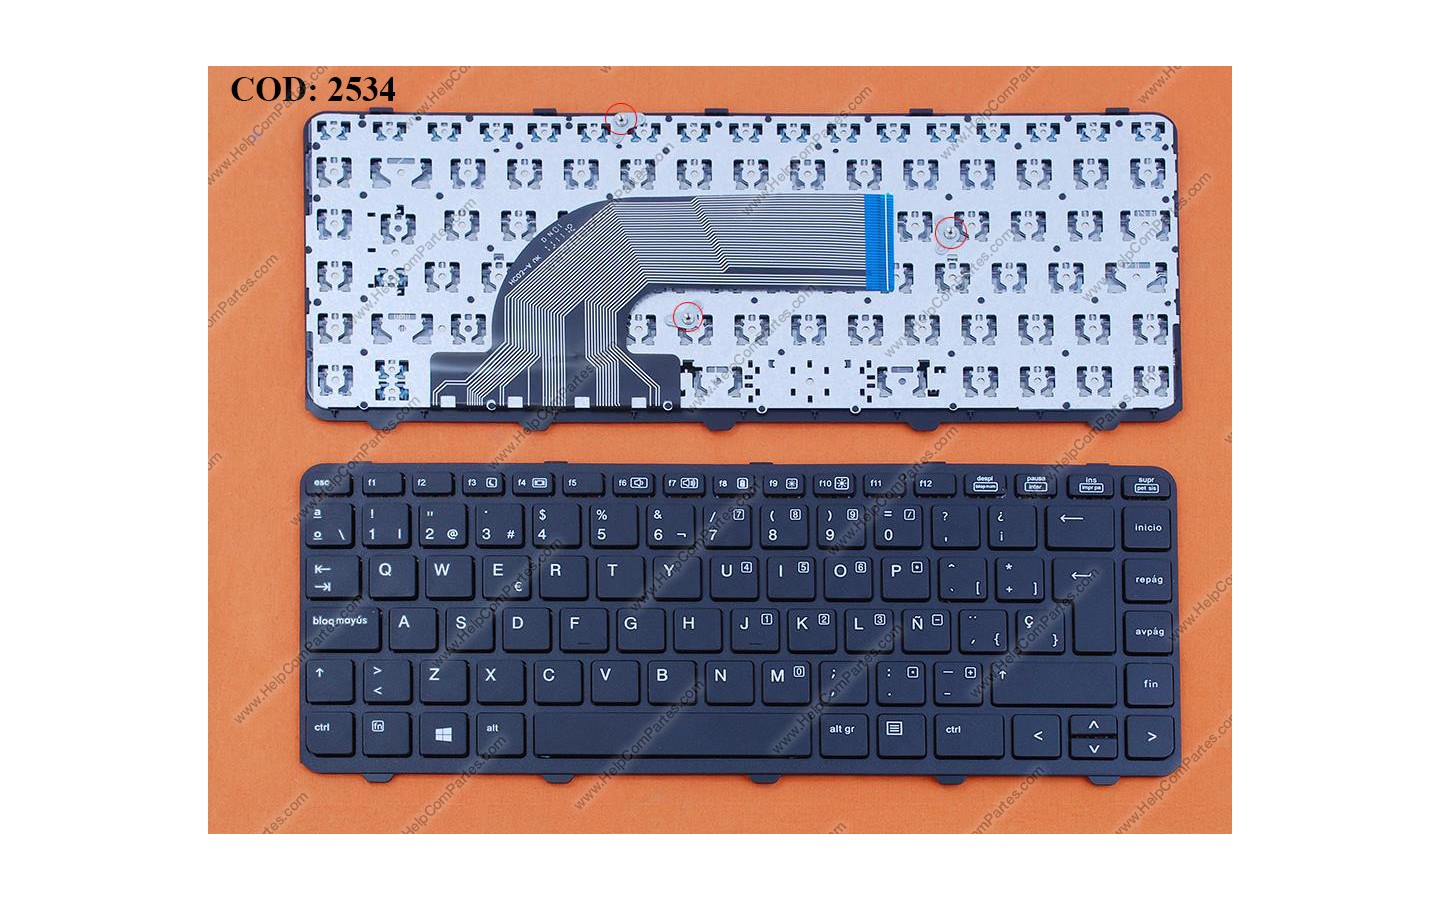 New Net Keyboards Teclado italiano compatible con Notebook HP Probook 440 G1 440 G2 445 G1 445 G2 430 G2 retroiluminado con marco 